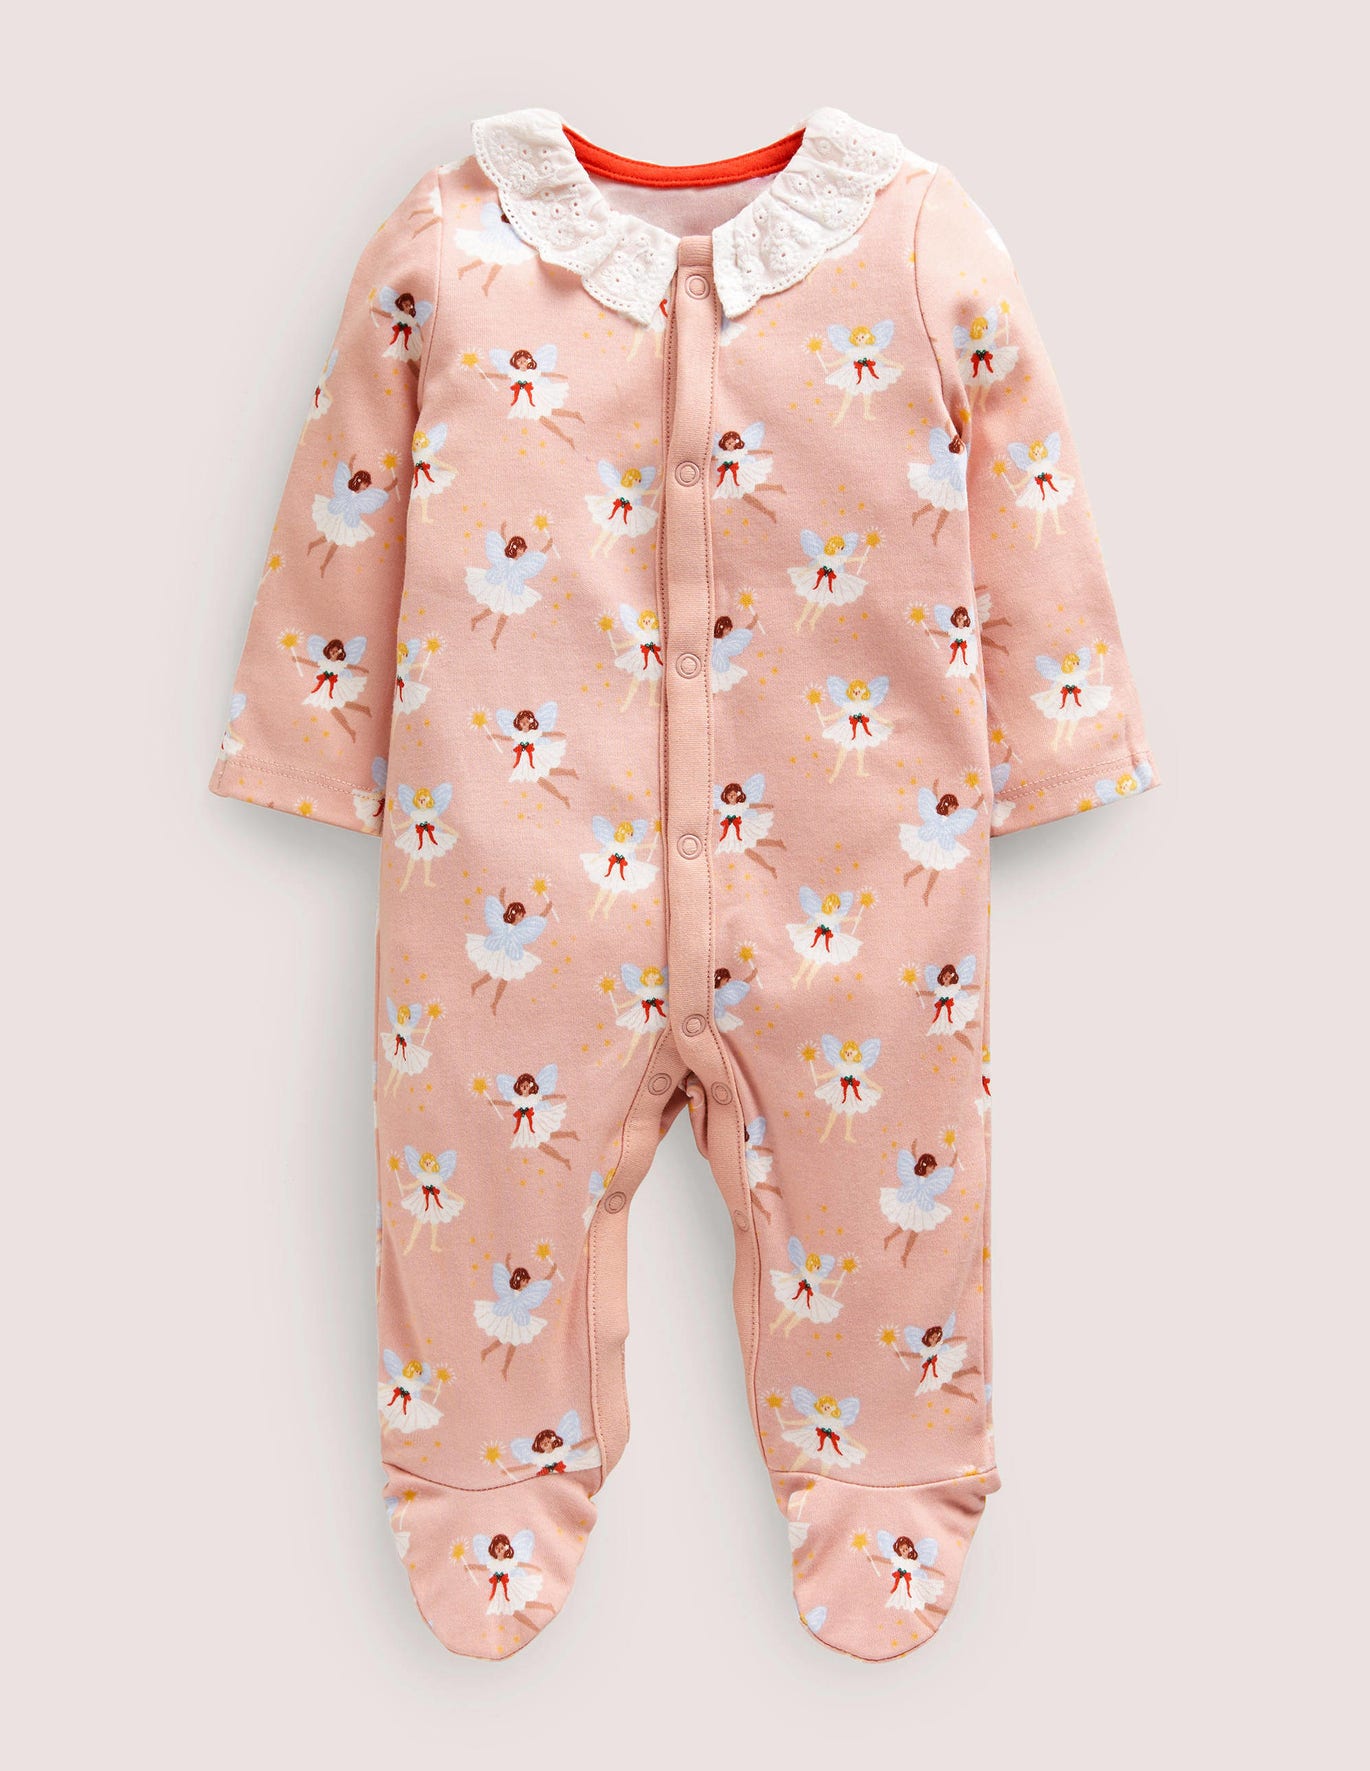 Boden Newborn Collared Sleepsuit - Boto Pink Fairies